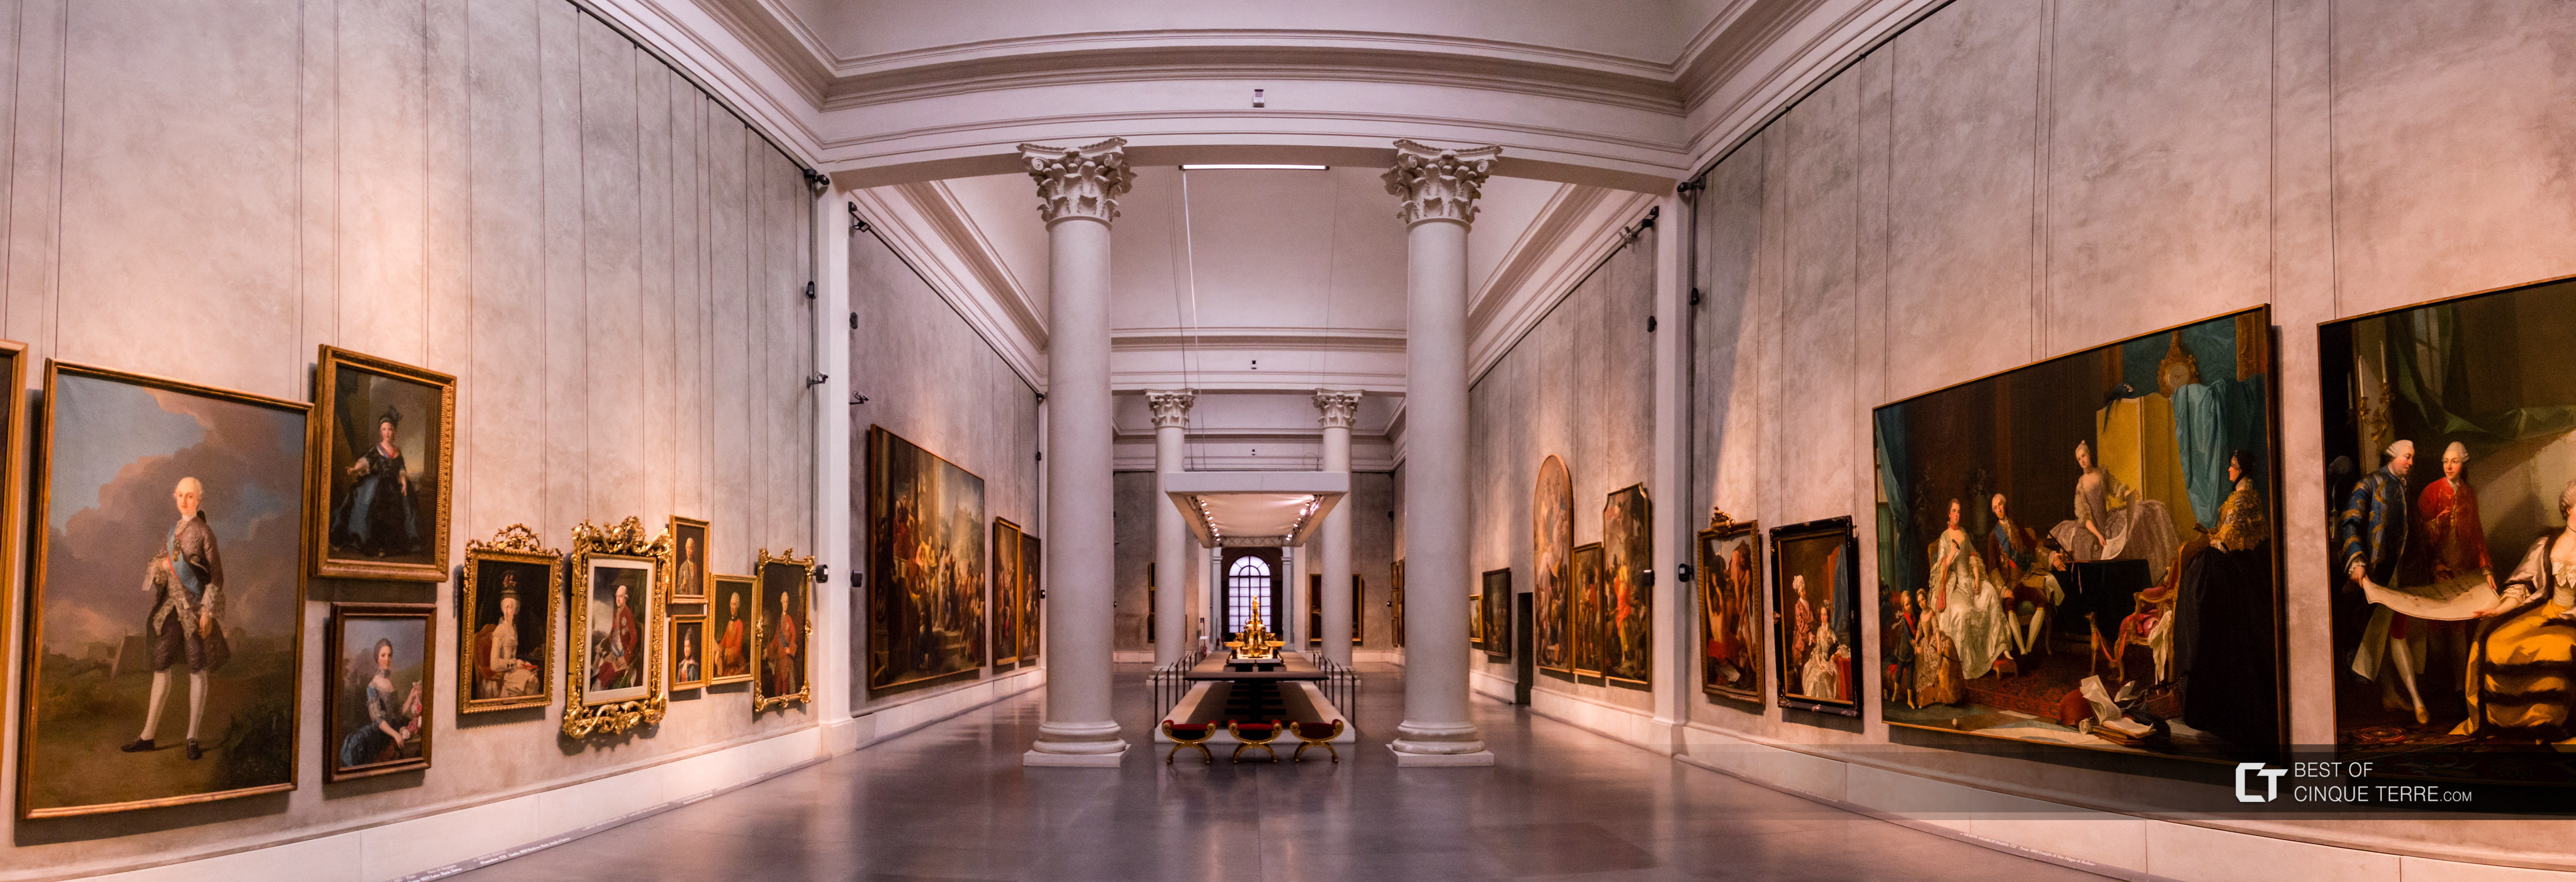 Galeria Națională, Parma, Italia